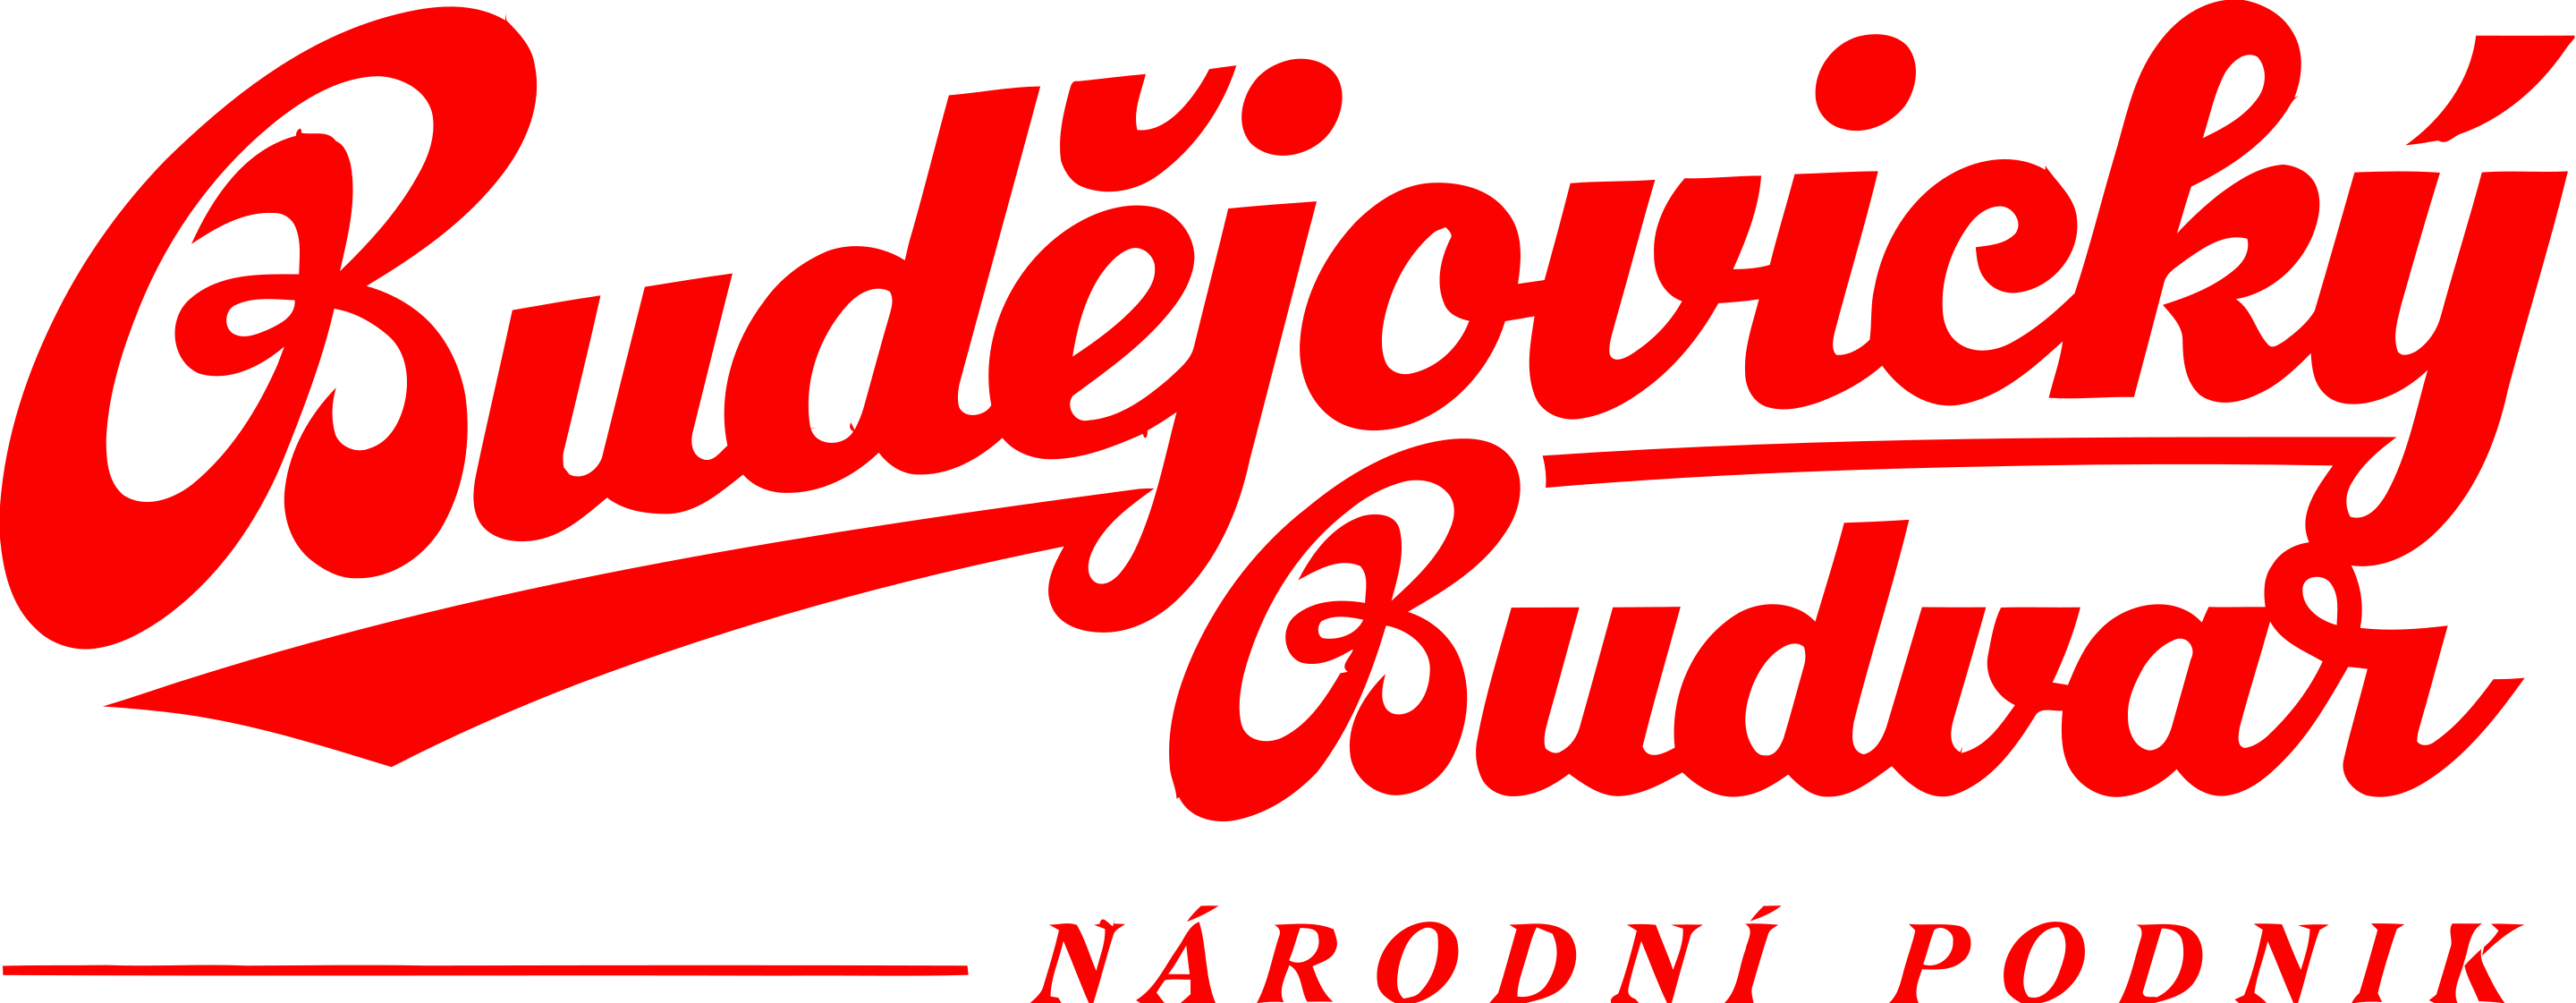 Old logo of Czech brewery Budějovický Budvar